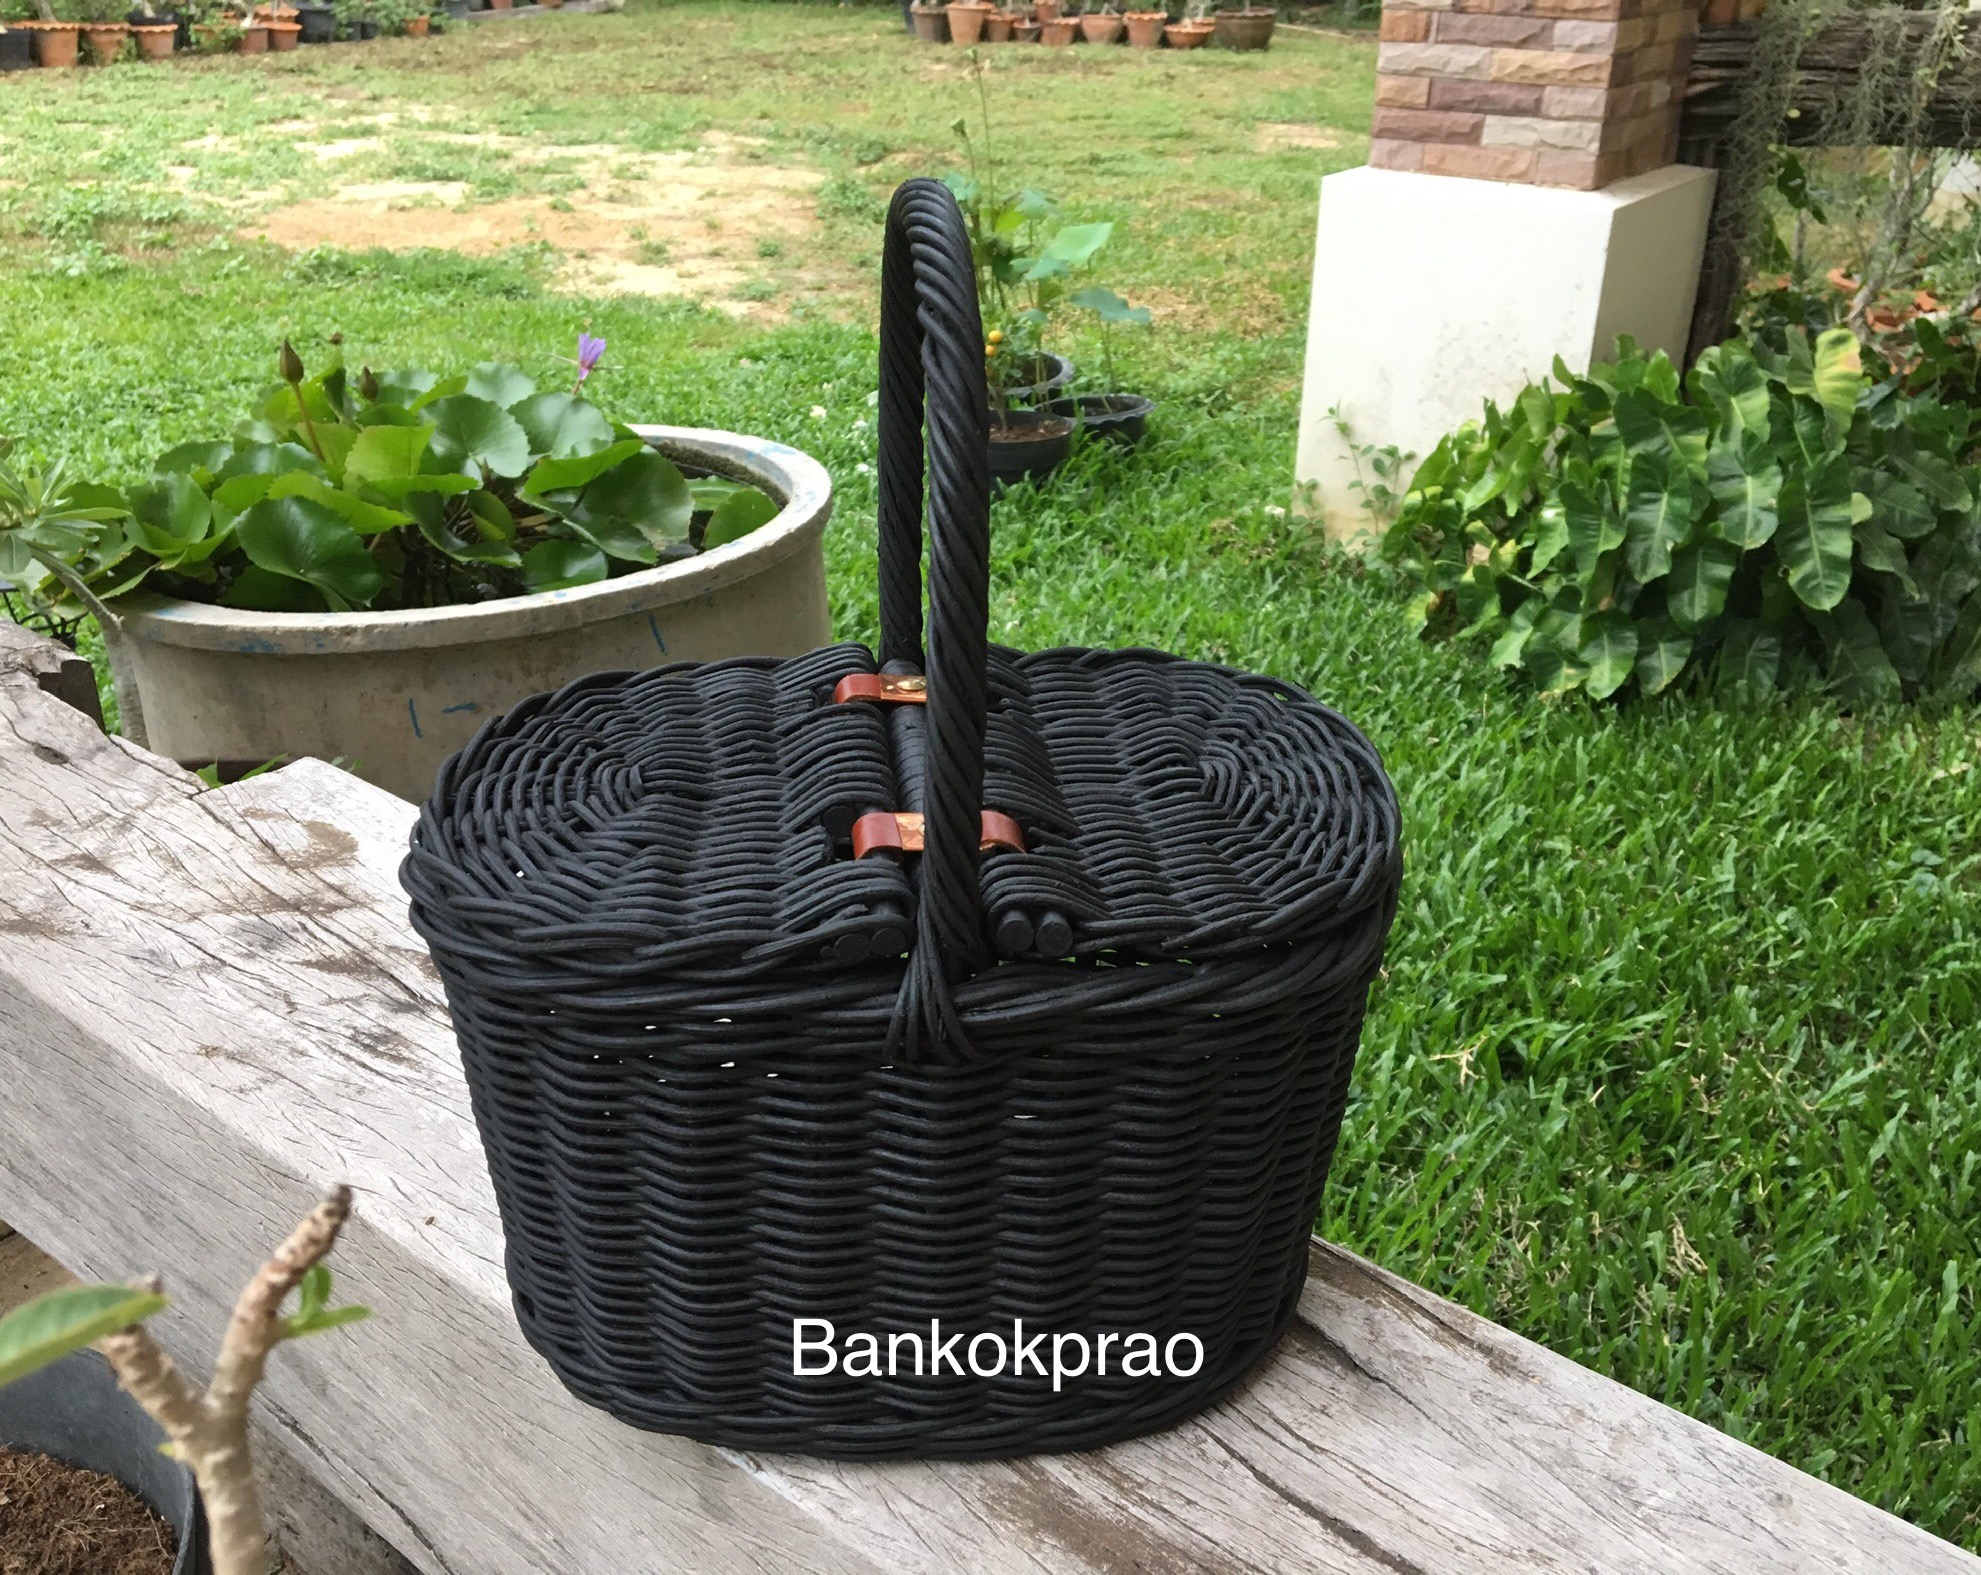 ตะกร้าหวาย ตะกร้า ตะกร้าปิคนิค กระเป๋าหวาย กระเป๋าสาน ใบเล็ก มี 3 แบบ (สีดำ/สีโอ๊คดำ/สีเบจ) Handmade Basket Size W18xL27xH17 cm  Bankokprao  Handmade Camping สี ดำถ่าน(บุผ้าซับในสีเทา) สี ดำถ่าน(บุผ้าซับในสีเทา)